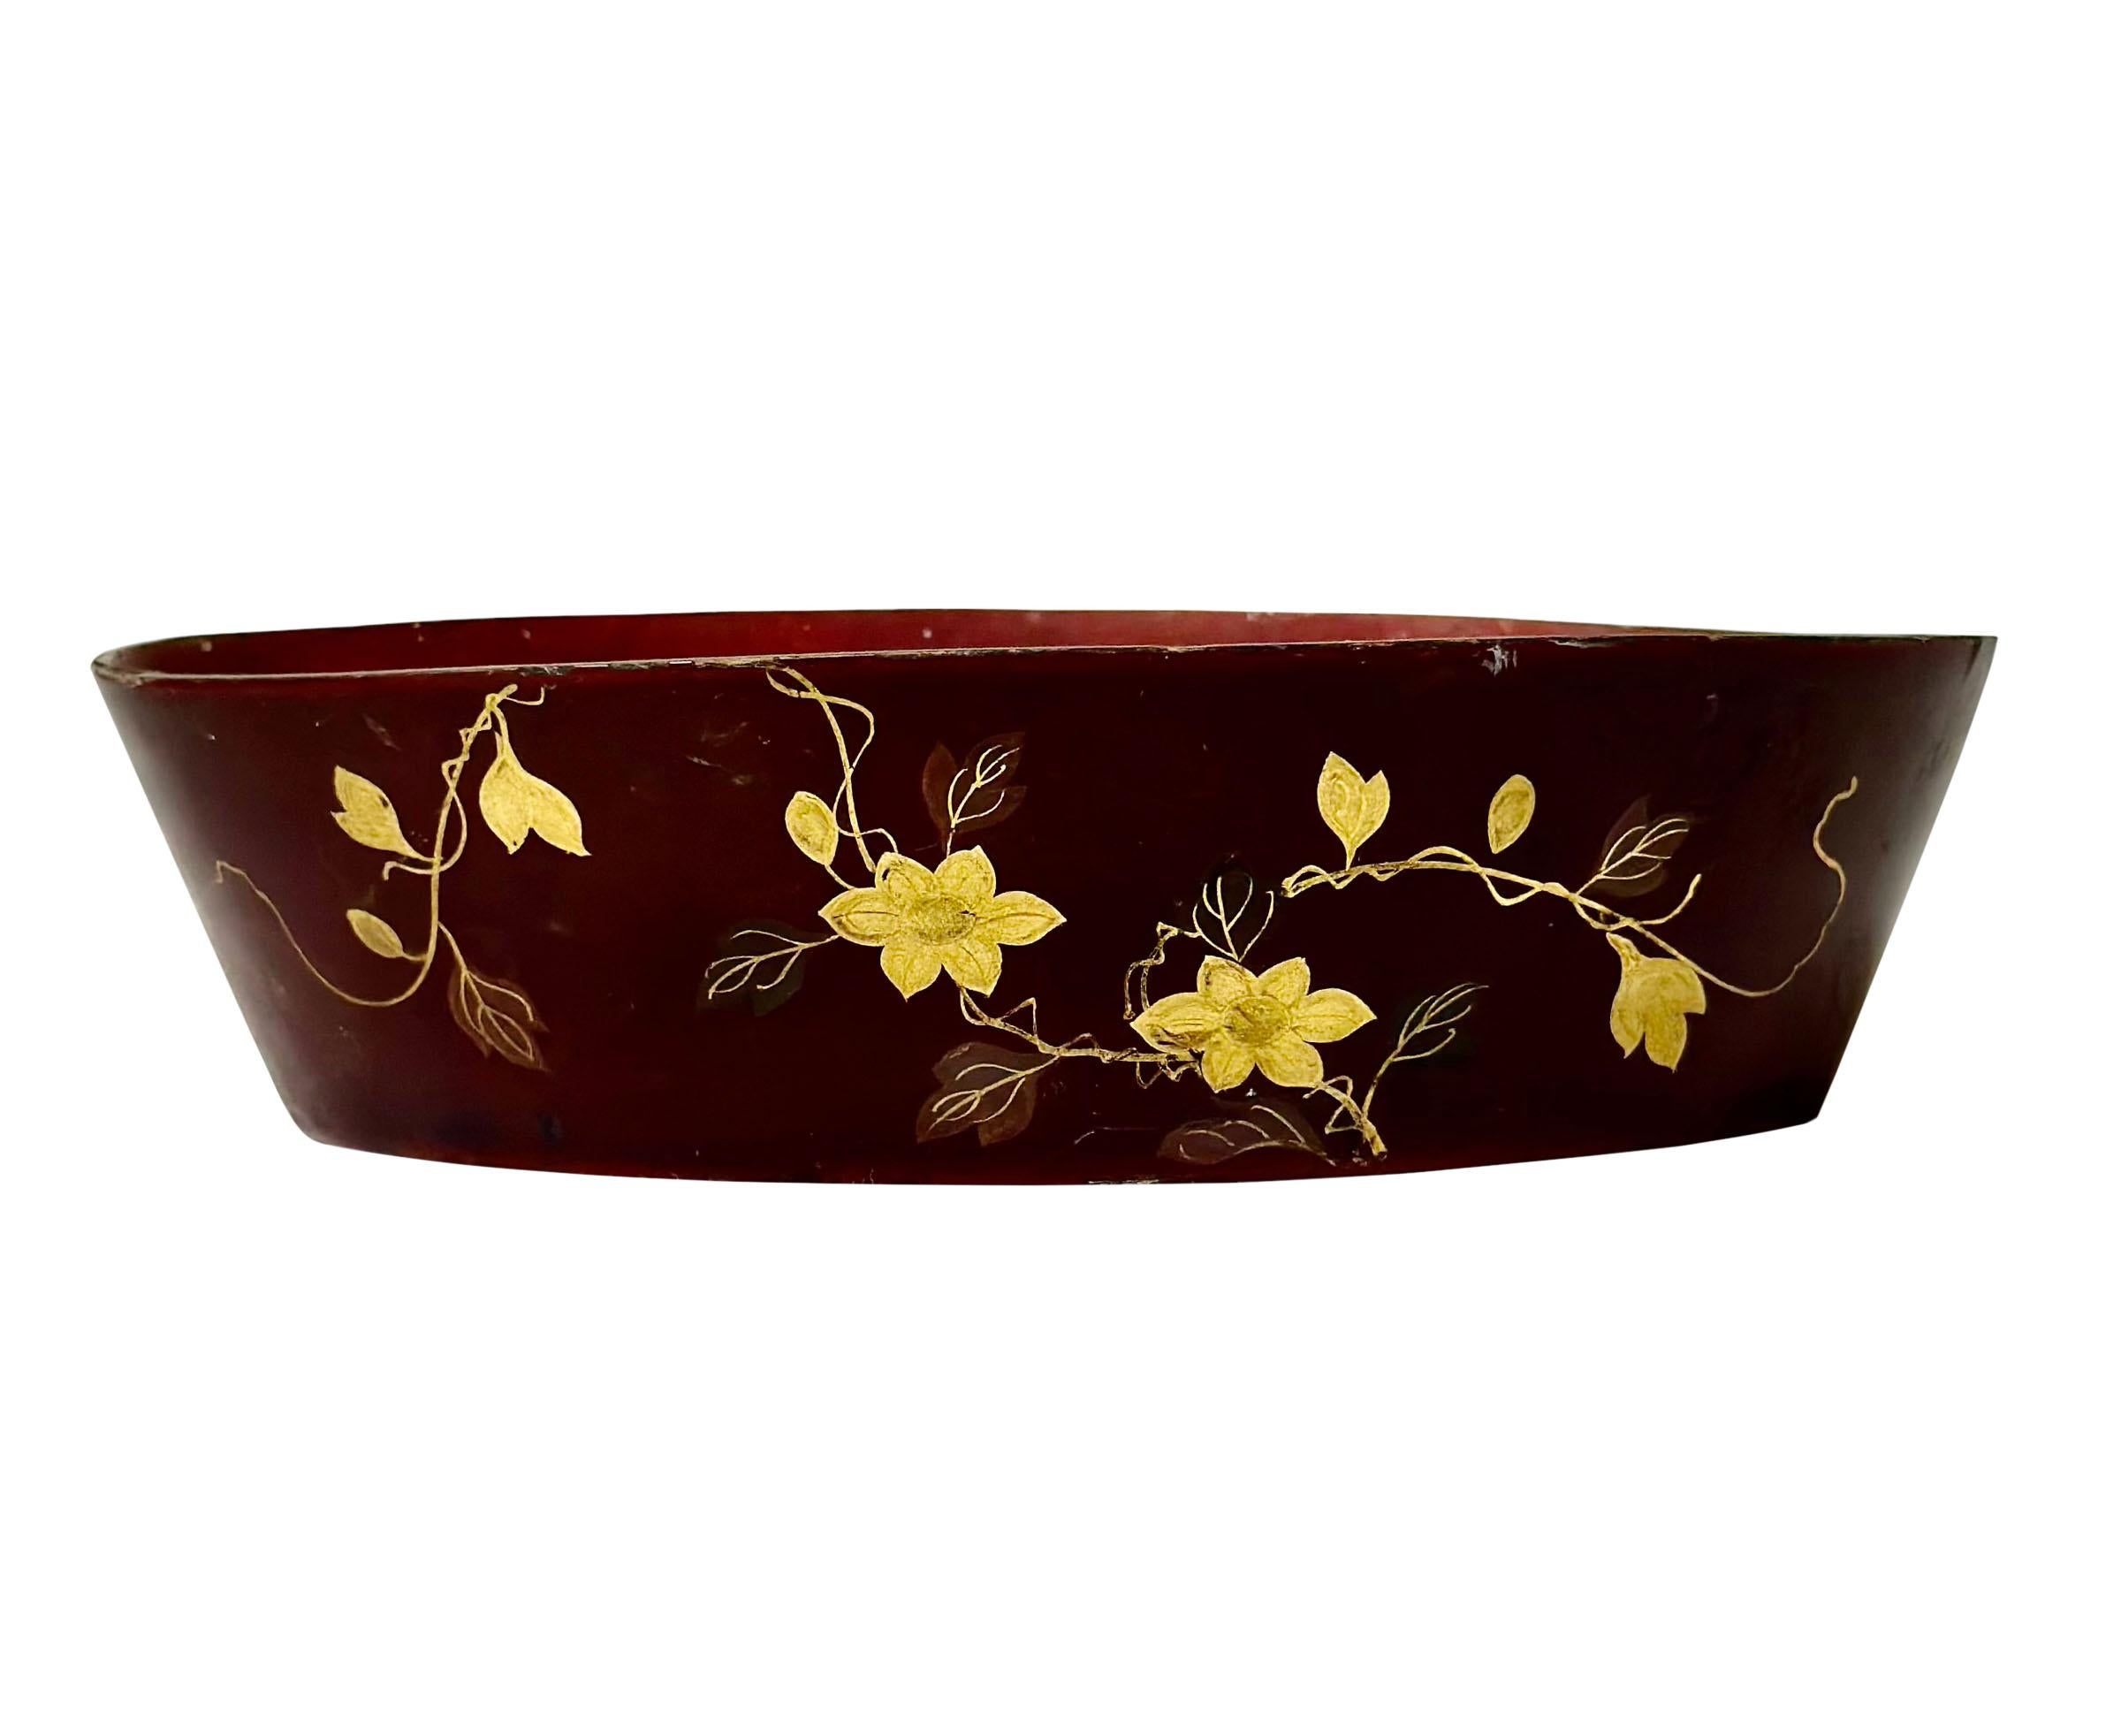 Petit plat ou jardinière en papier mâché d'exportation chinoise avec un motif de fleurs en or. Il date du début du 19e siècle.